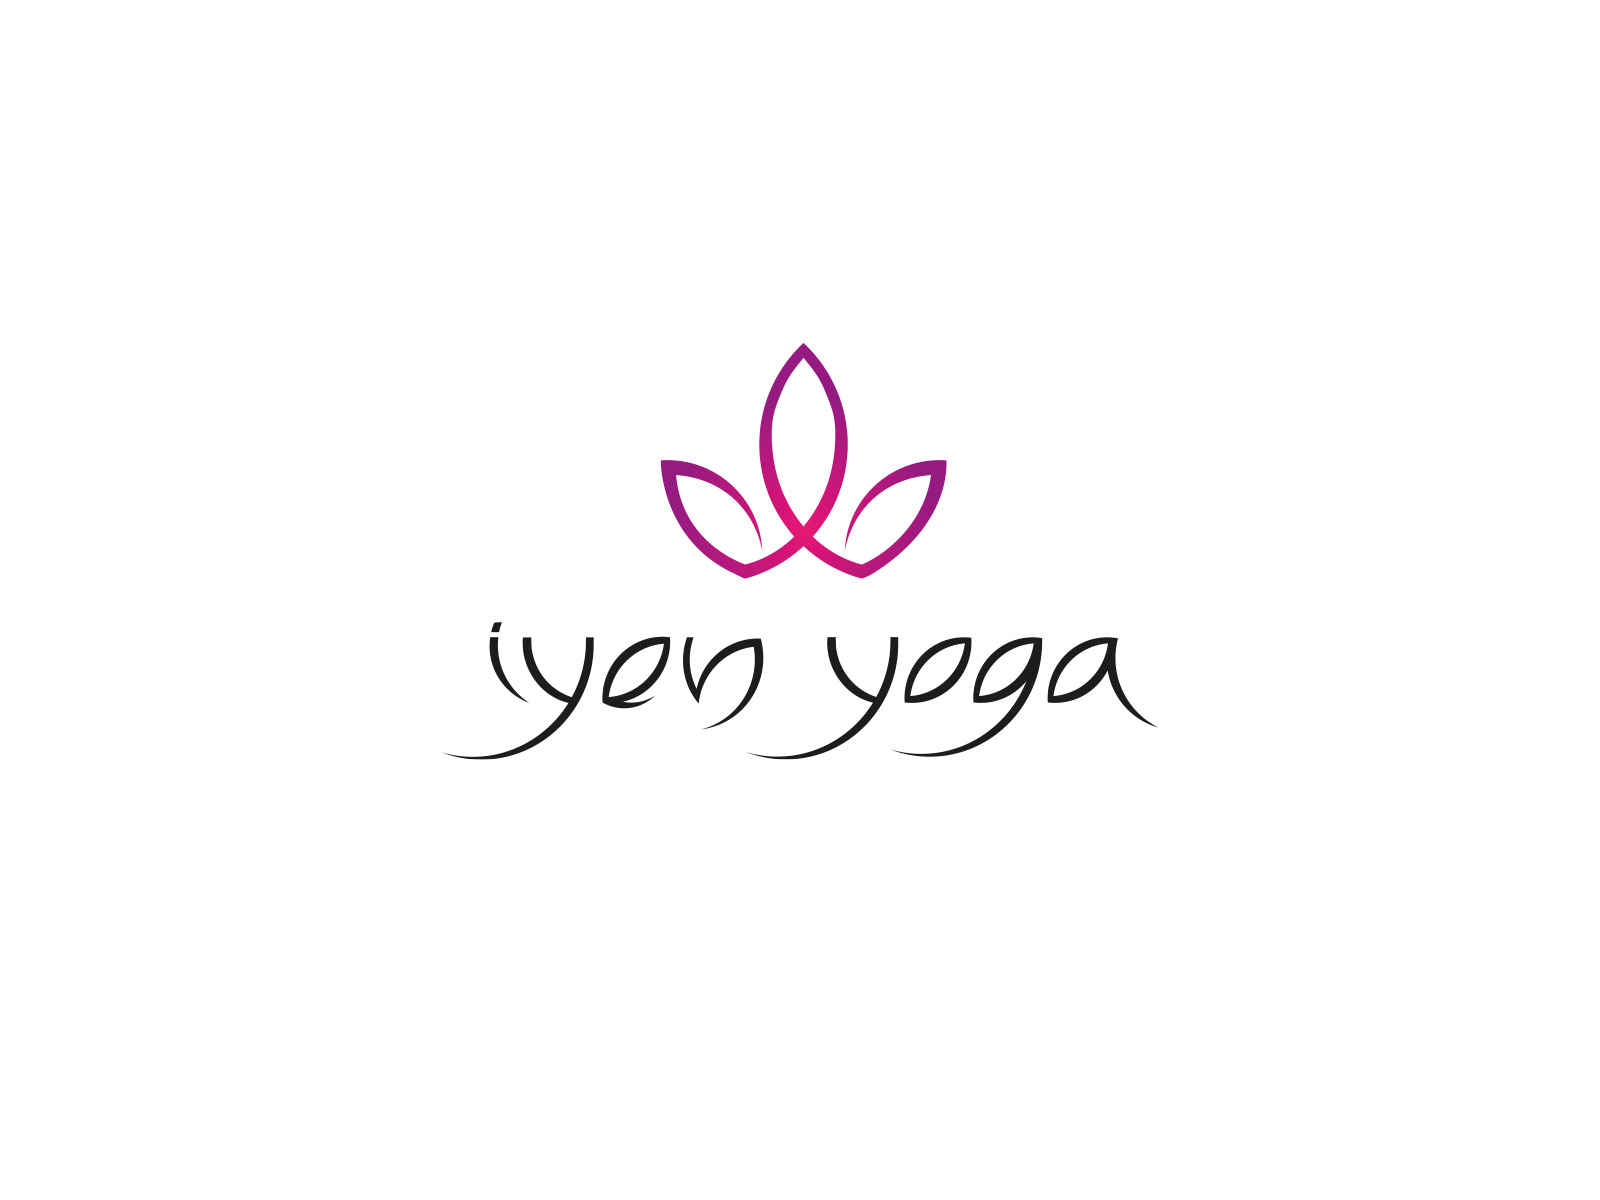 iyen yoga logo by Jana Zvěřinová on Dribbble